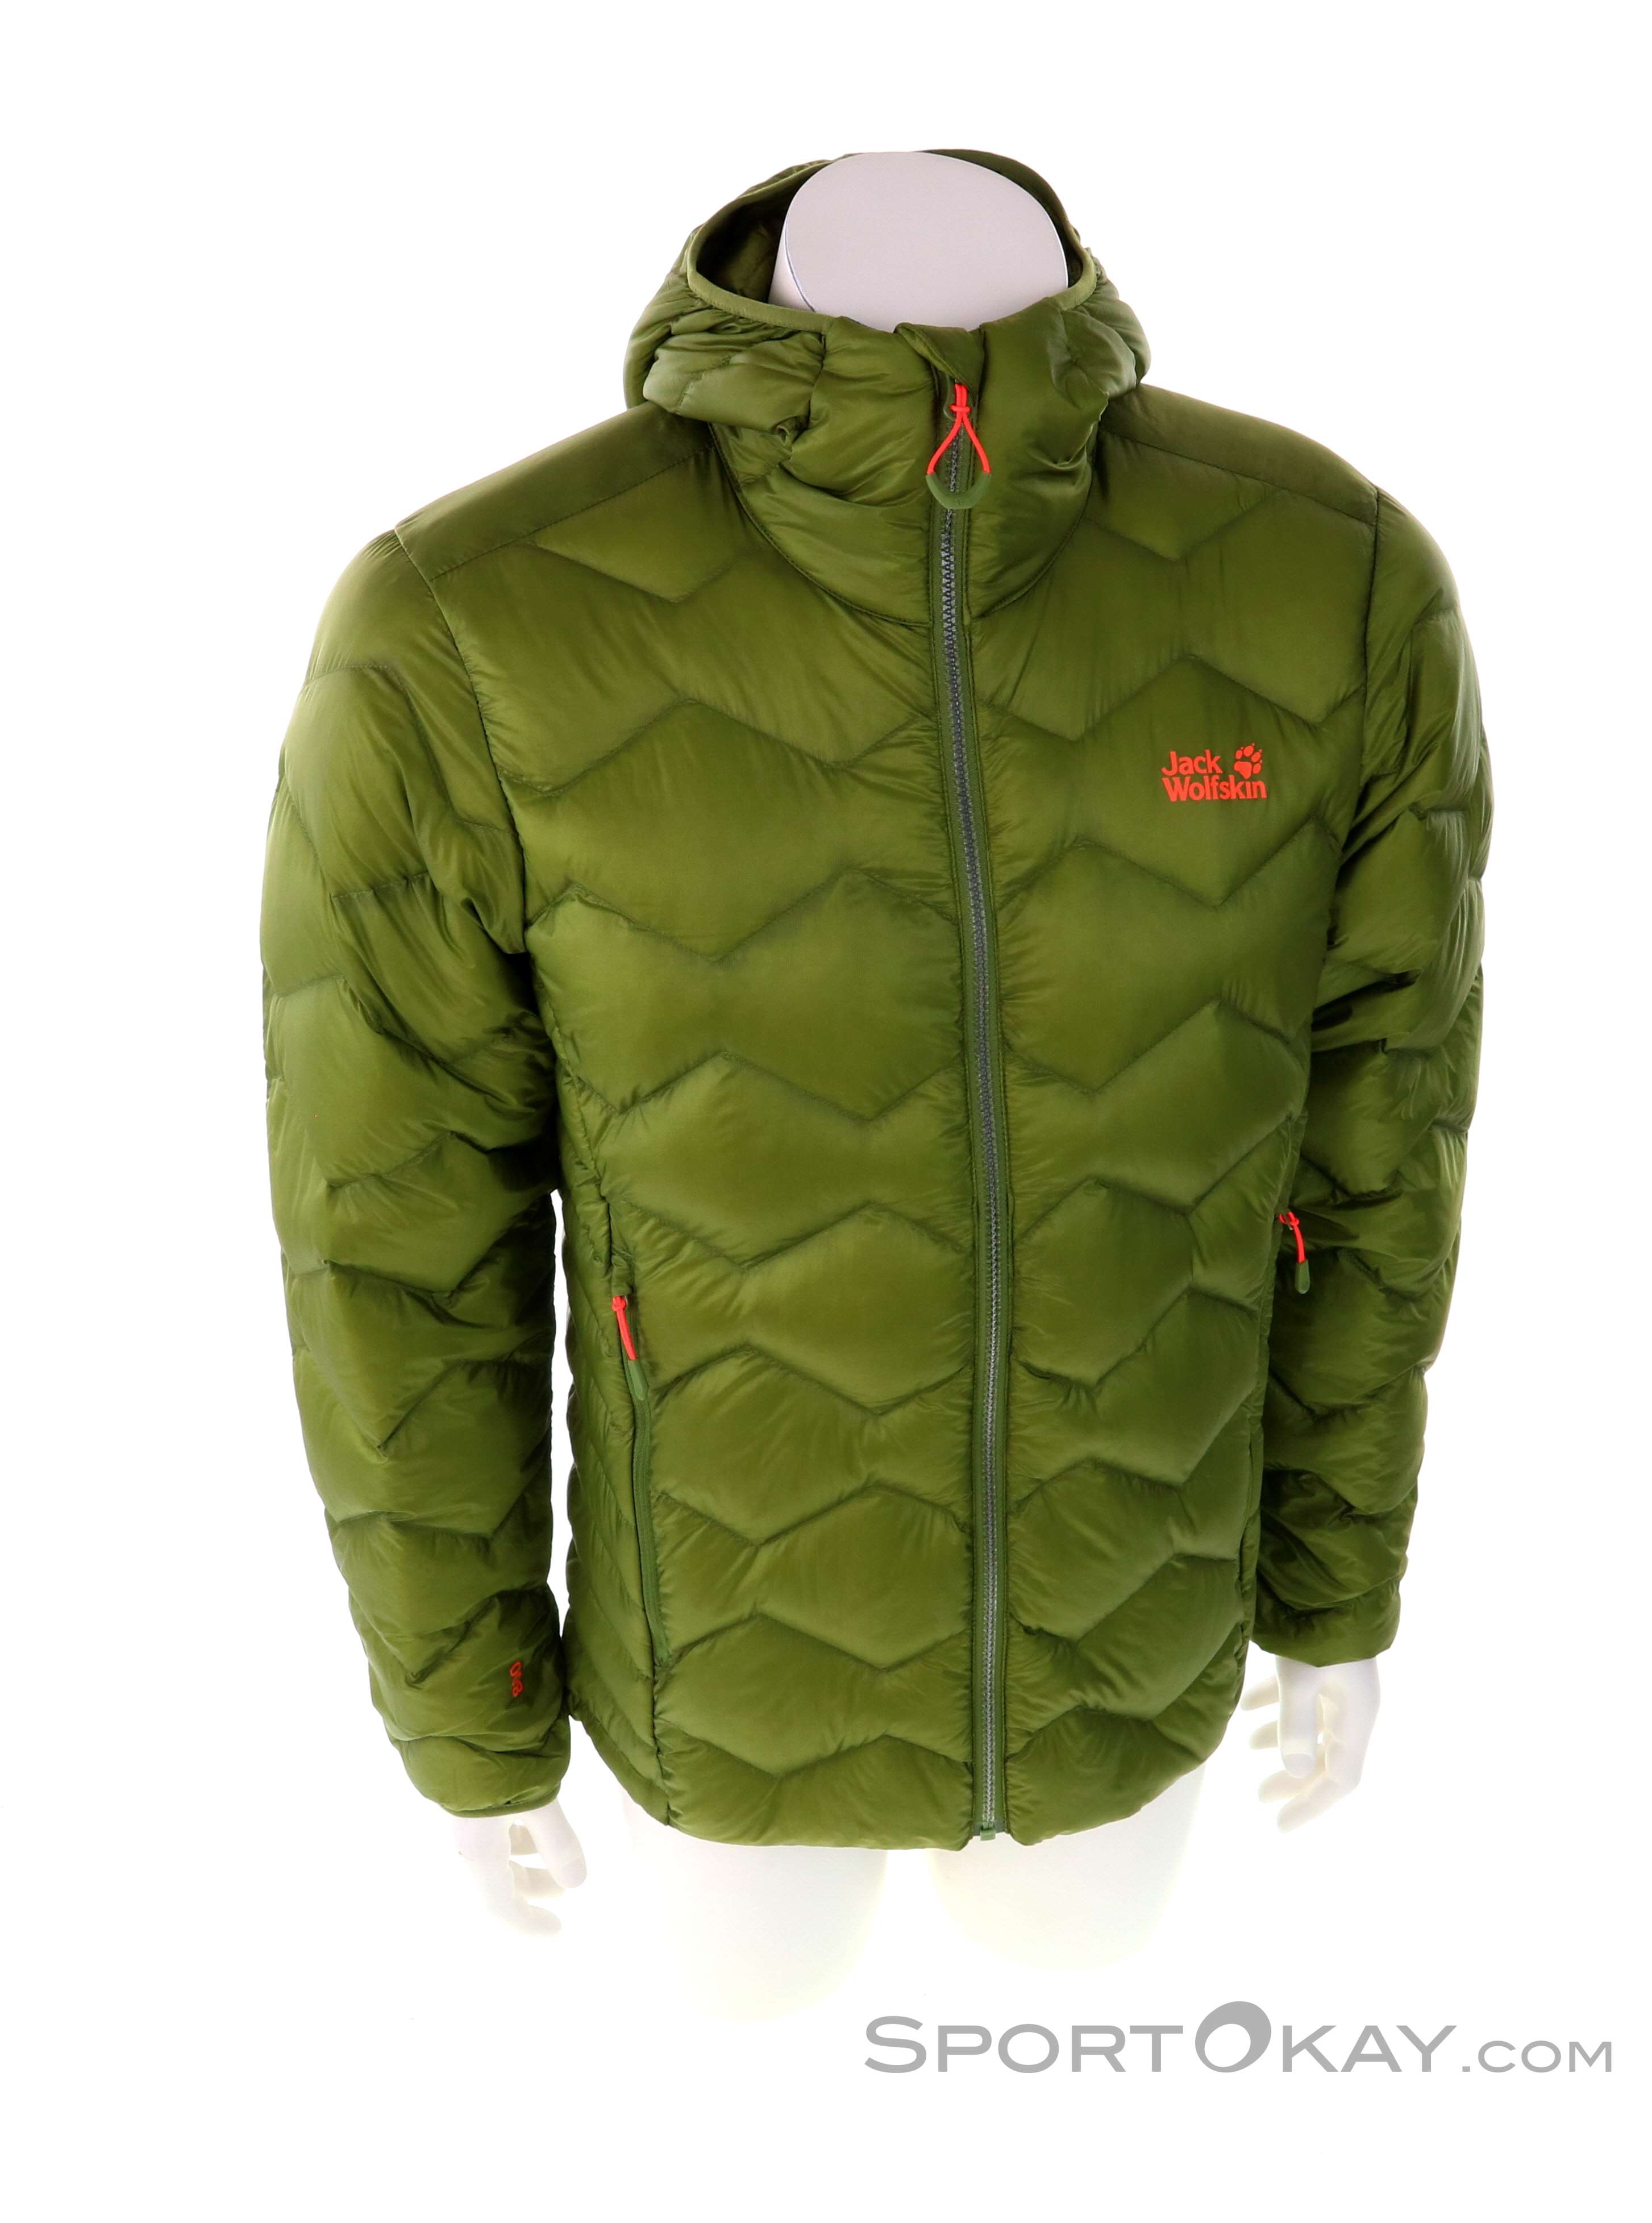 Jack Wolfskin Argo Peak Jacket Mens Outdoor Jacket - Jackets - Outdoor  Clothing - Outdoor - All